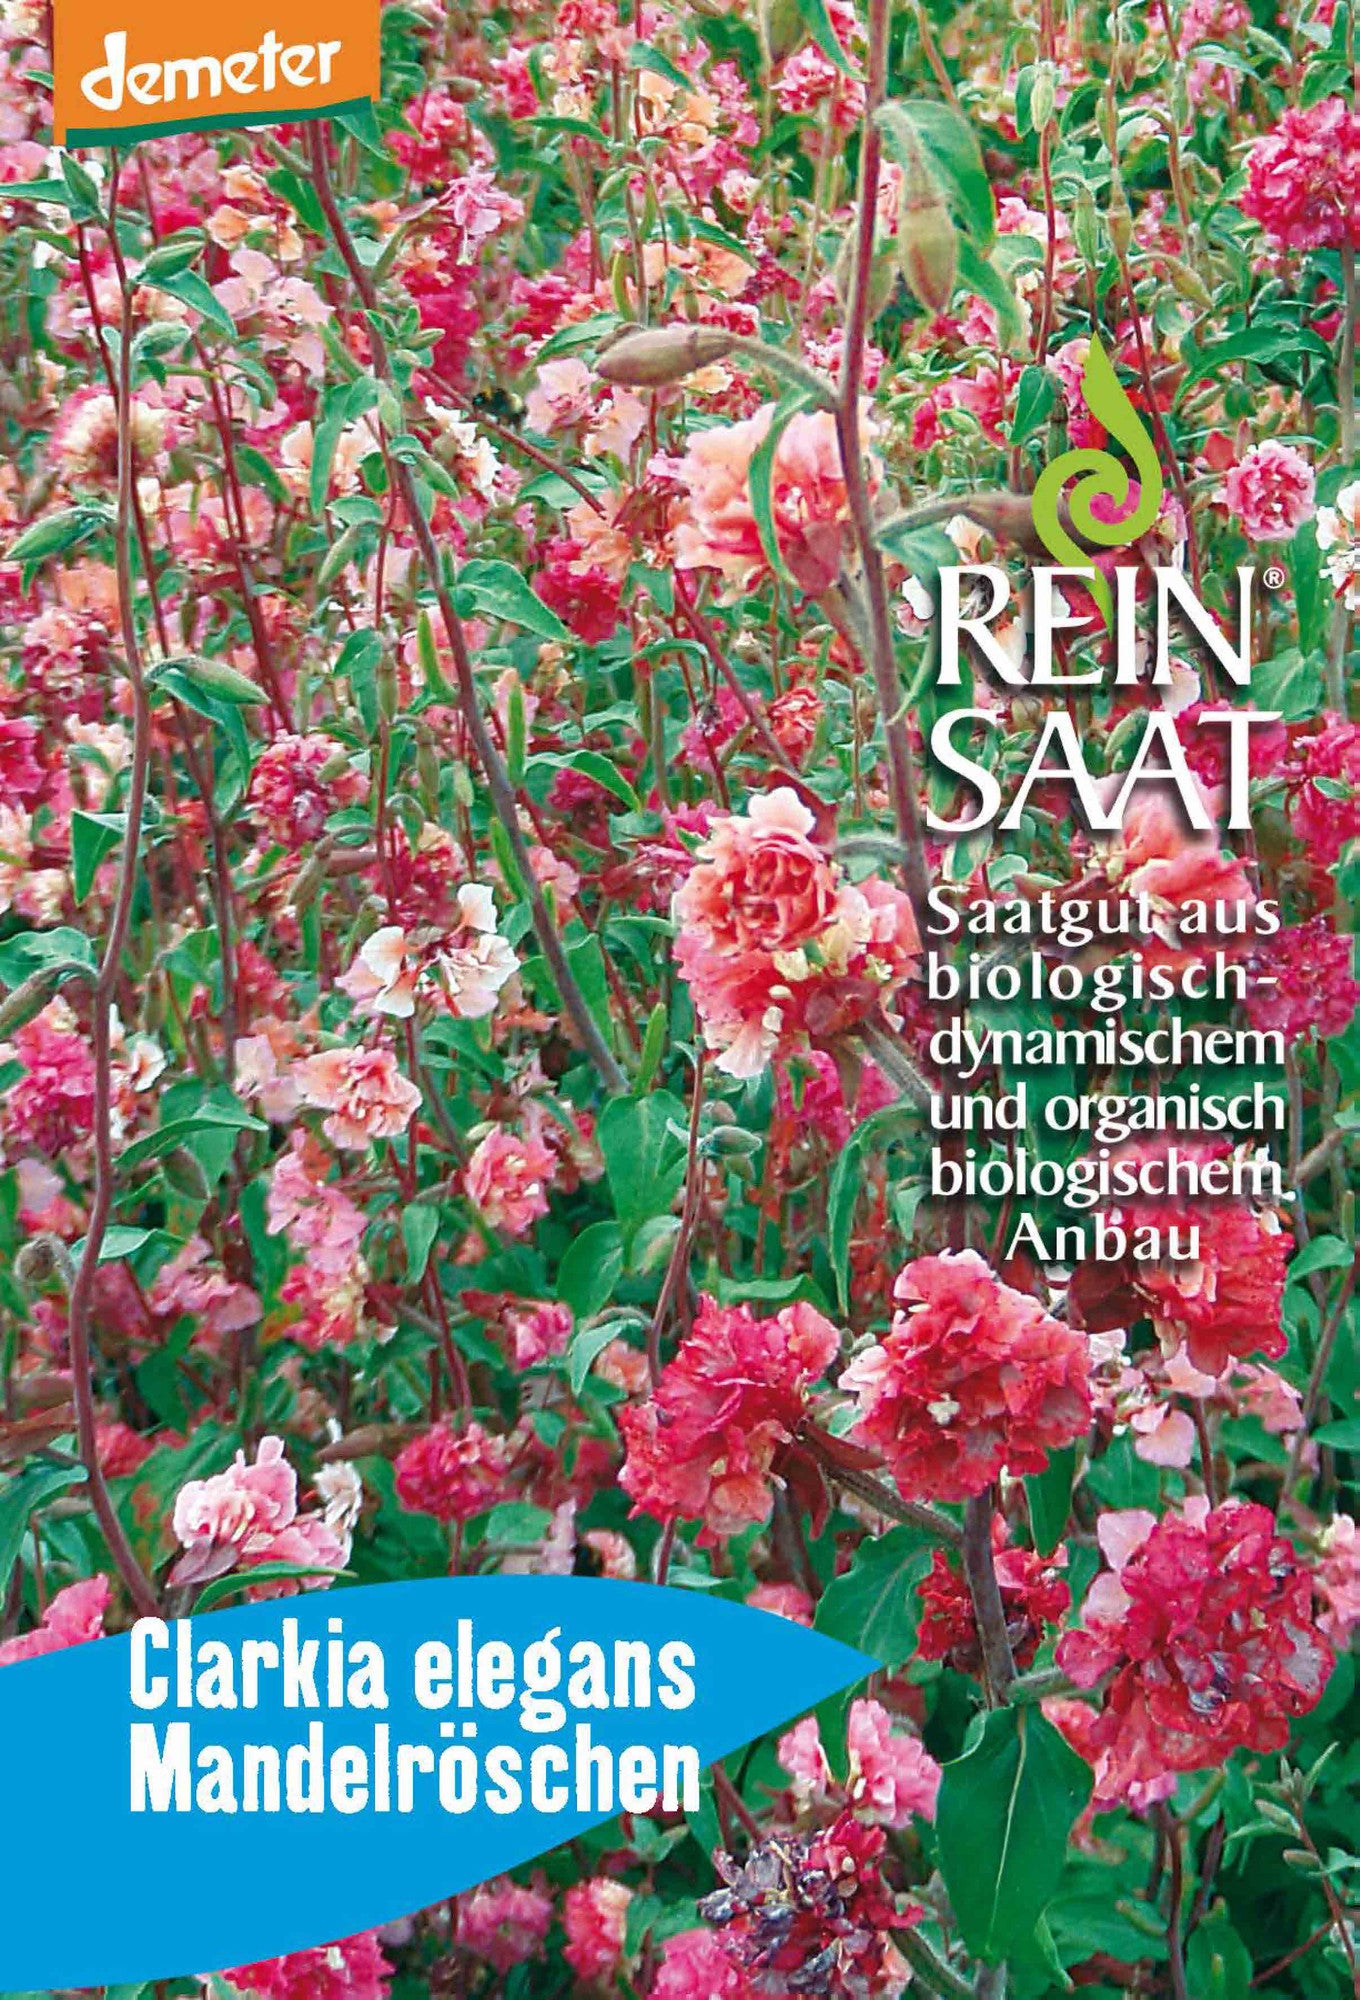 Mandelröschen | BIO Blumensamen von Reinsaat